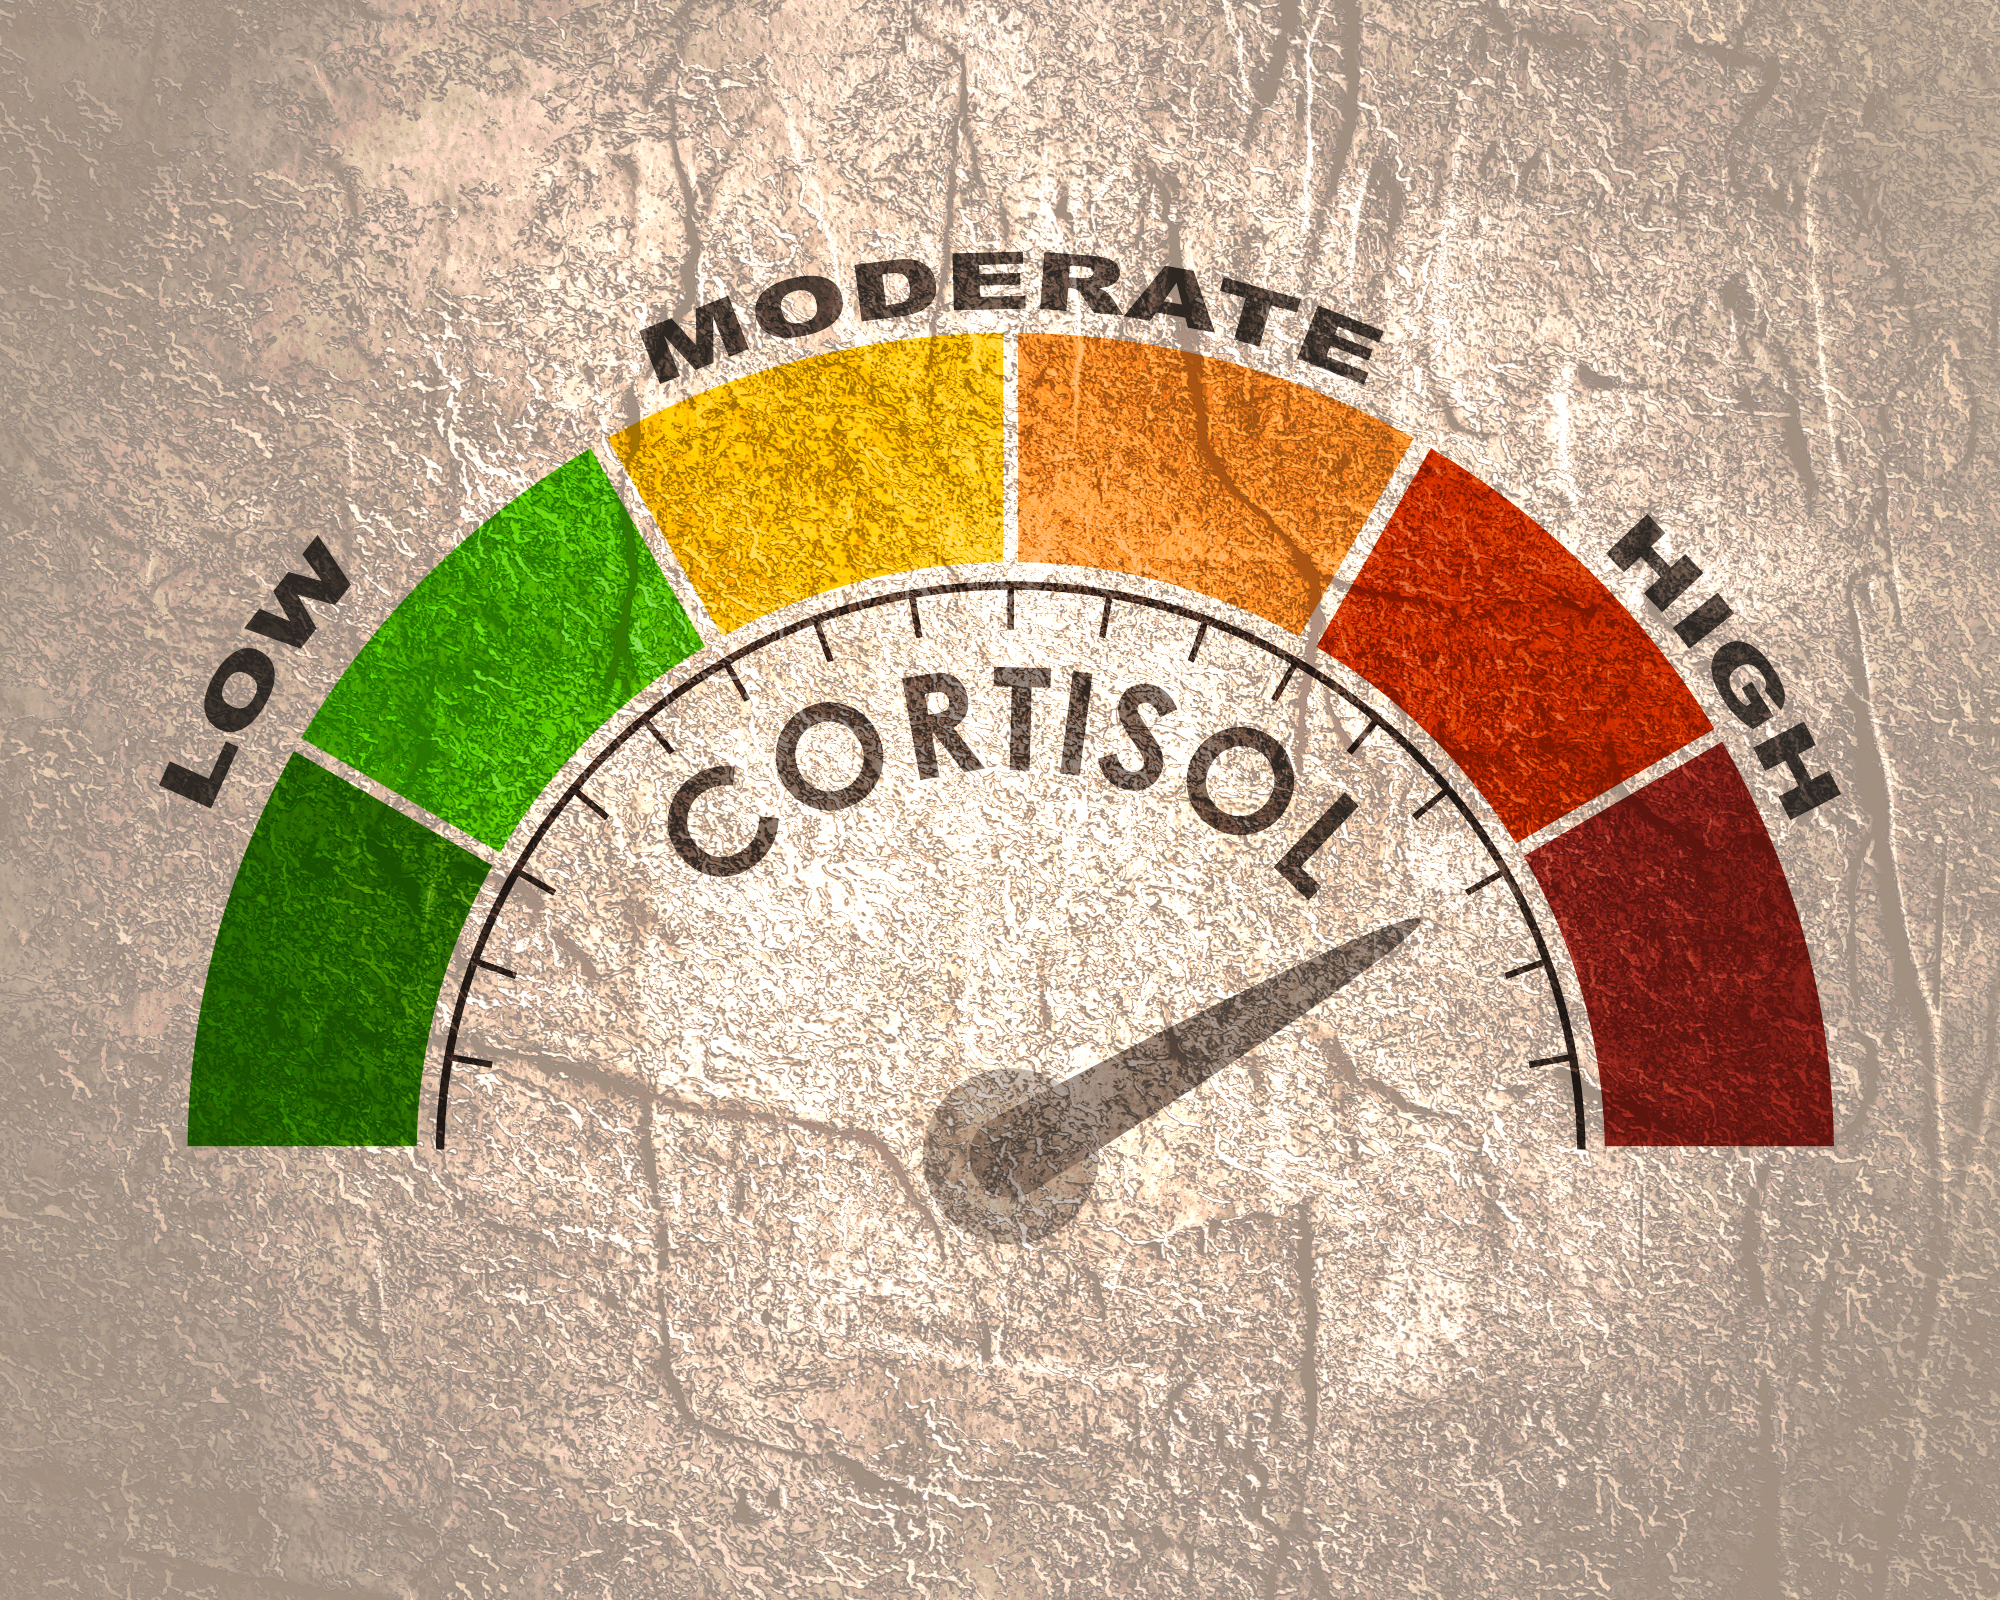 Kortizol je pri čisto vsakemu človeku zelo pomembna